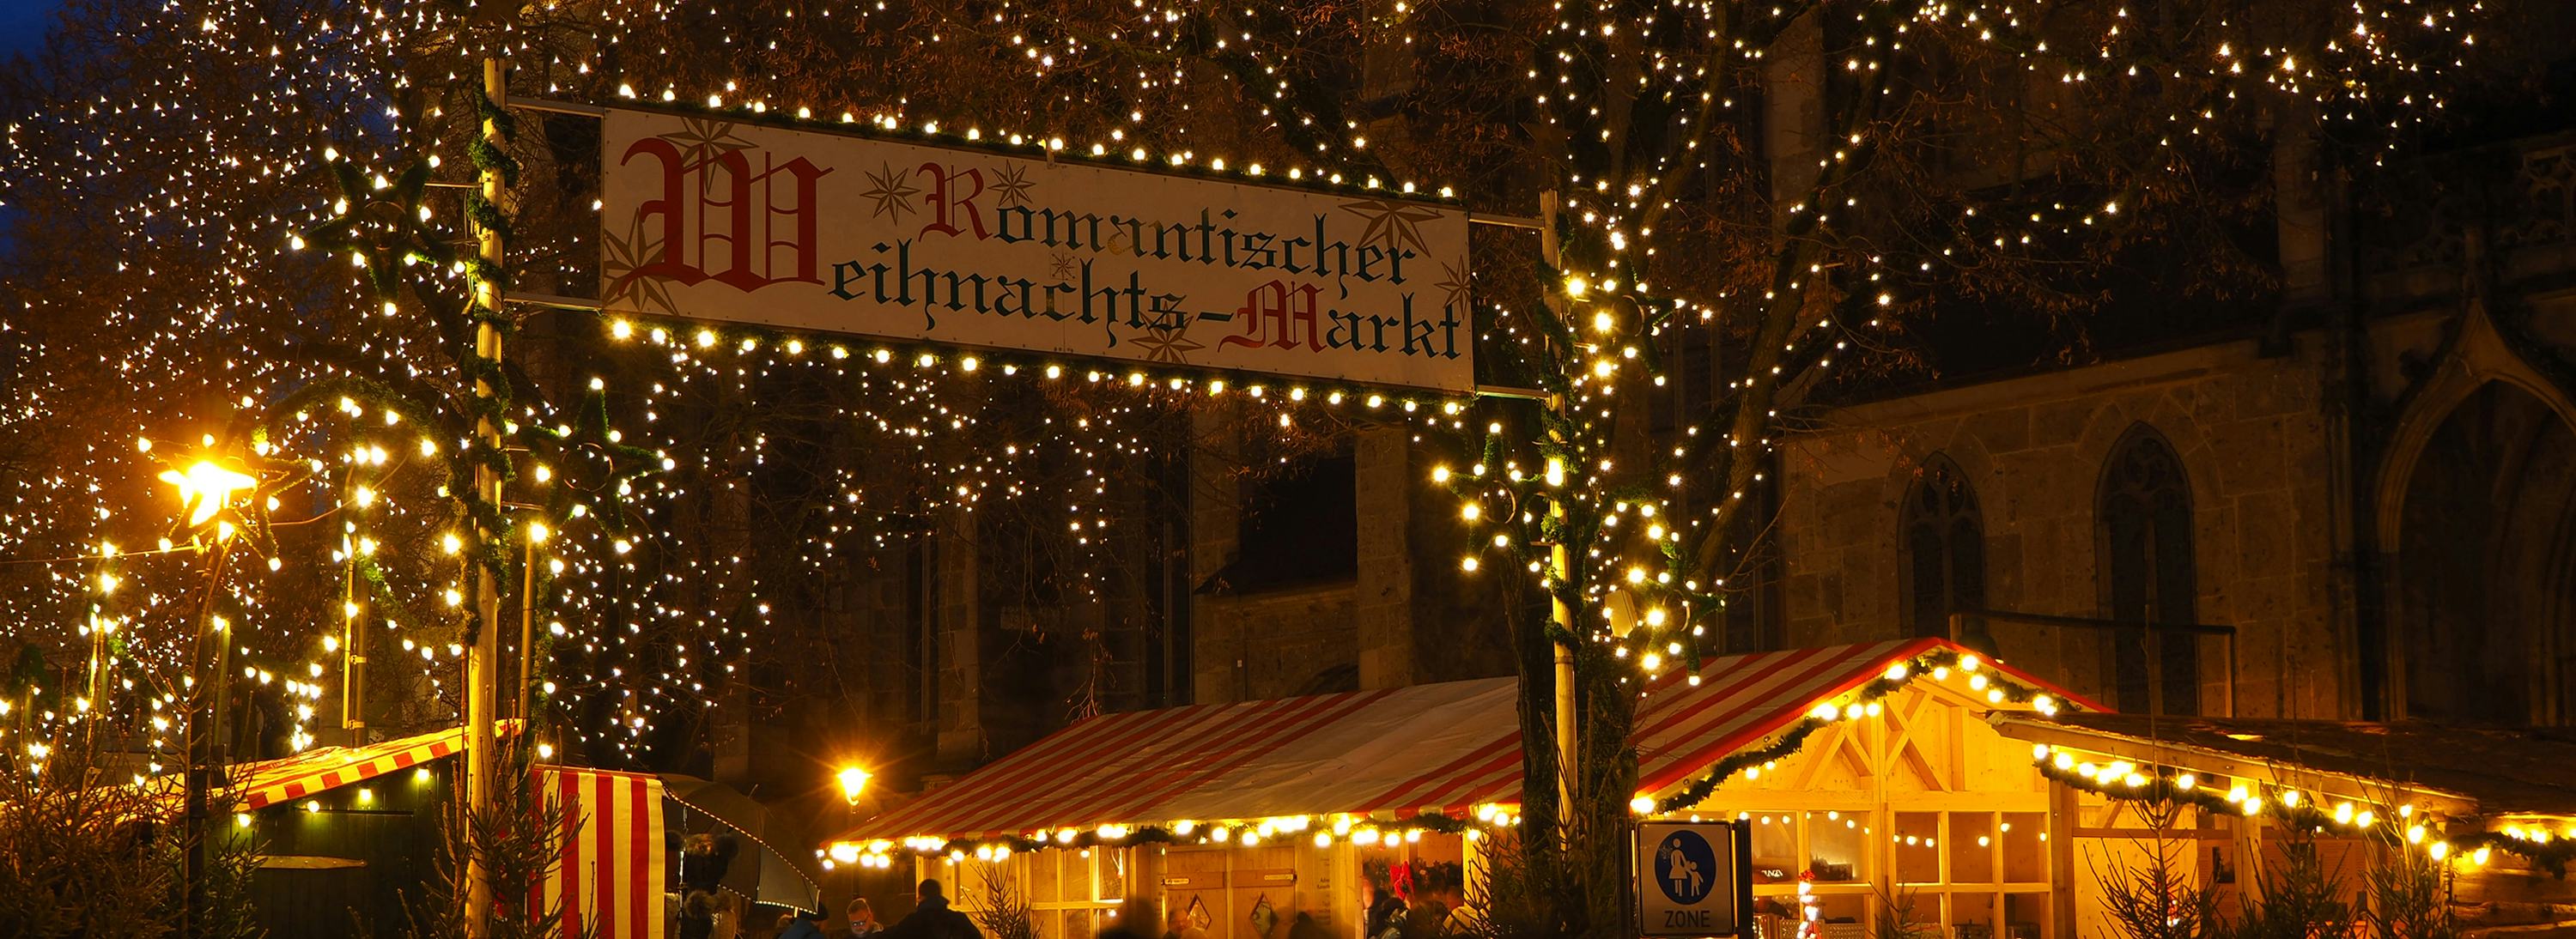 Weihnachtsmarkt Stand in Nördlingen Martina Grimm